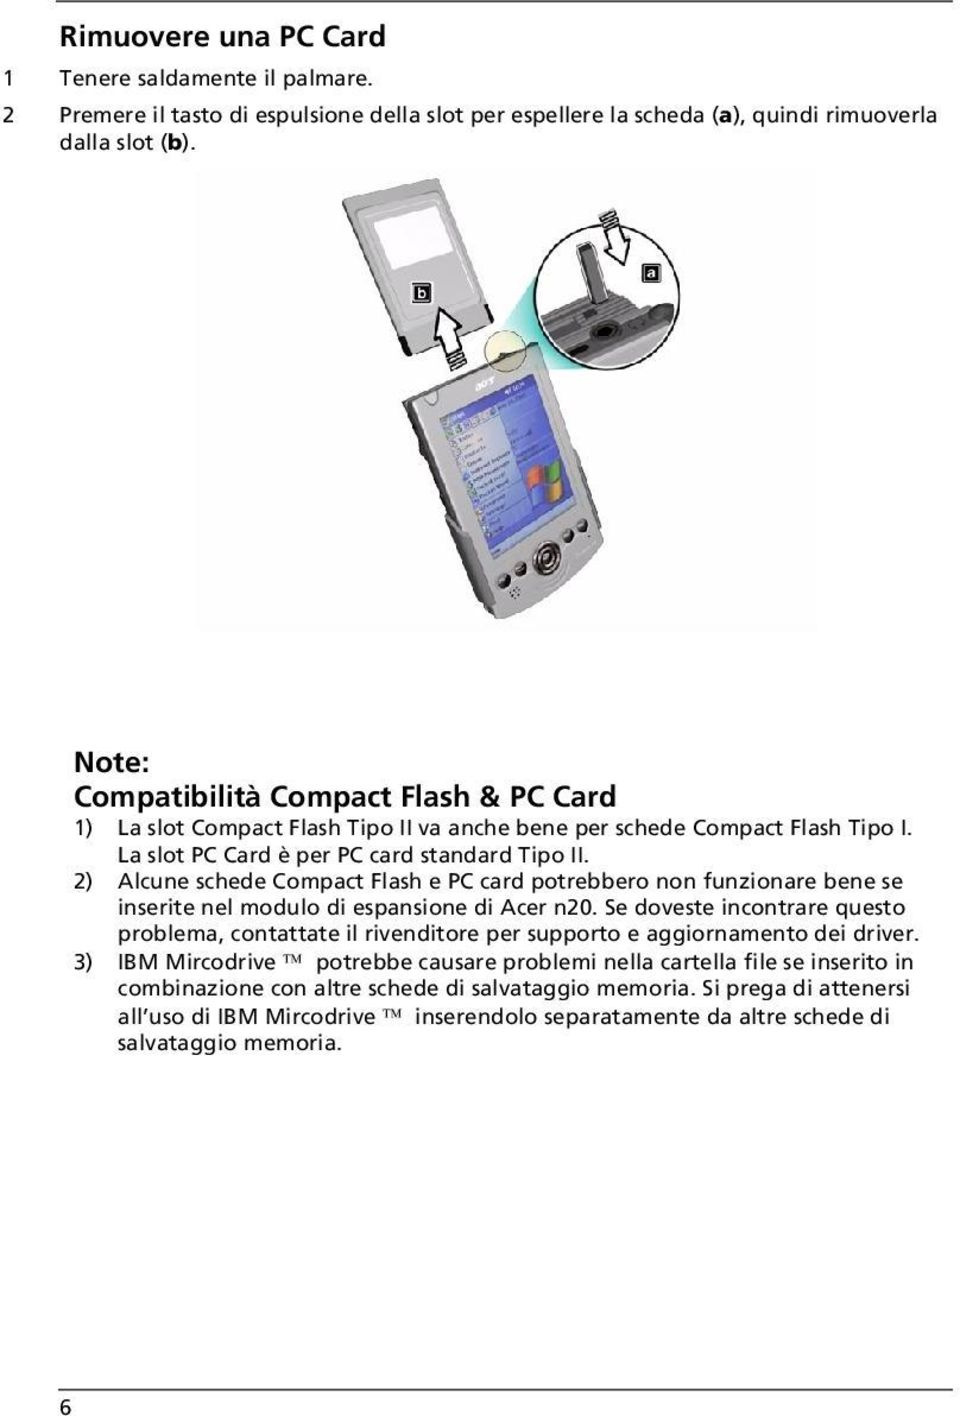 2) Alcune schede Compact Flash e PC card potrebbero non funzionare bene se inserite nel modulo di espansione di Acer n20.